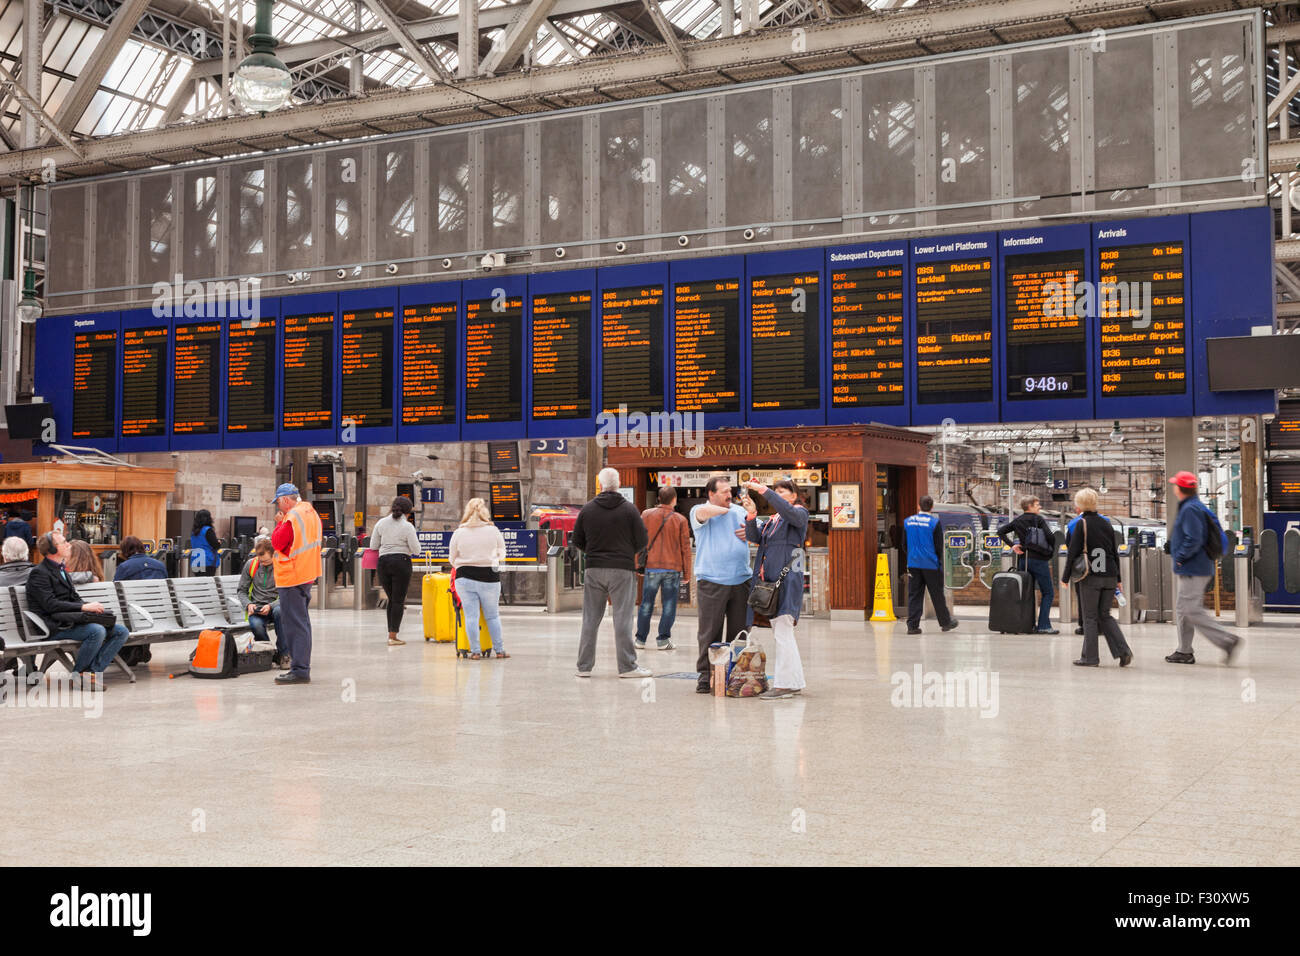 Centre de la gare et de départ, la gare centrale de Glasgow, Glasgow, Ecosse, Royaume-Uni. Banque D'Images